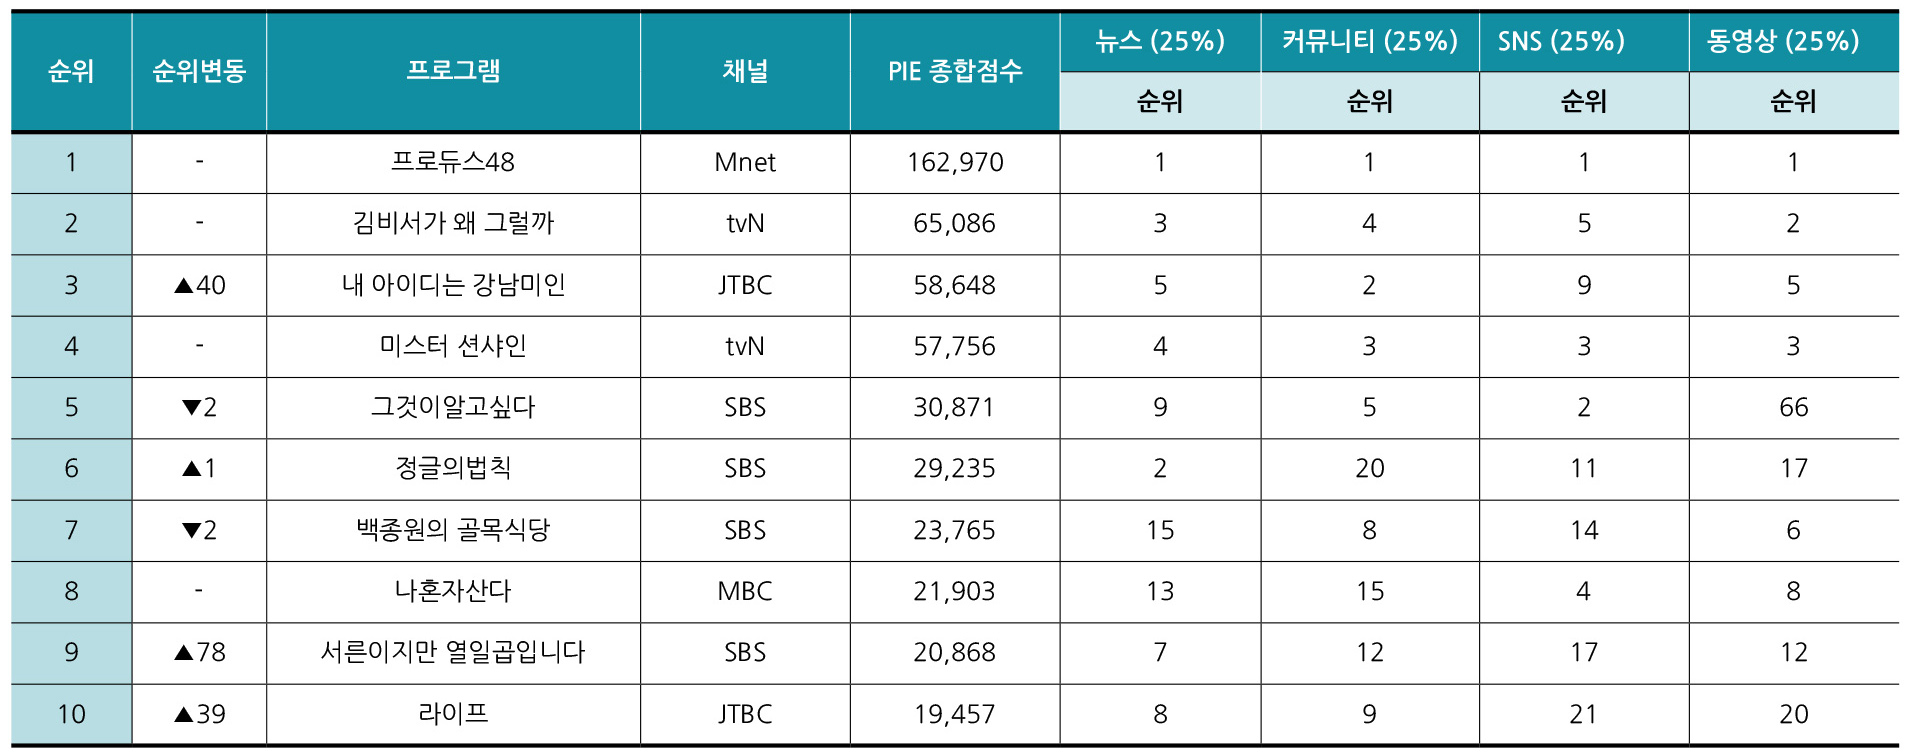 PIE-TV주간 7월마지막주 Top10 리스트